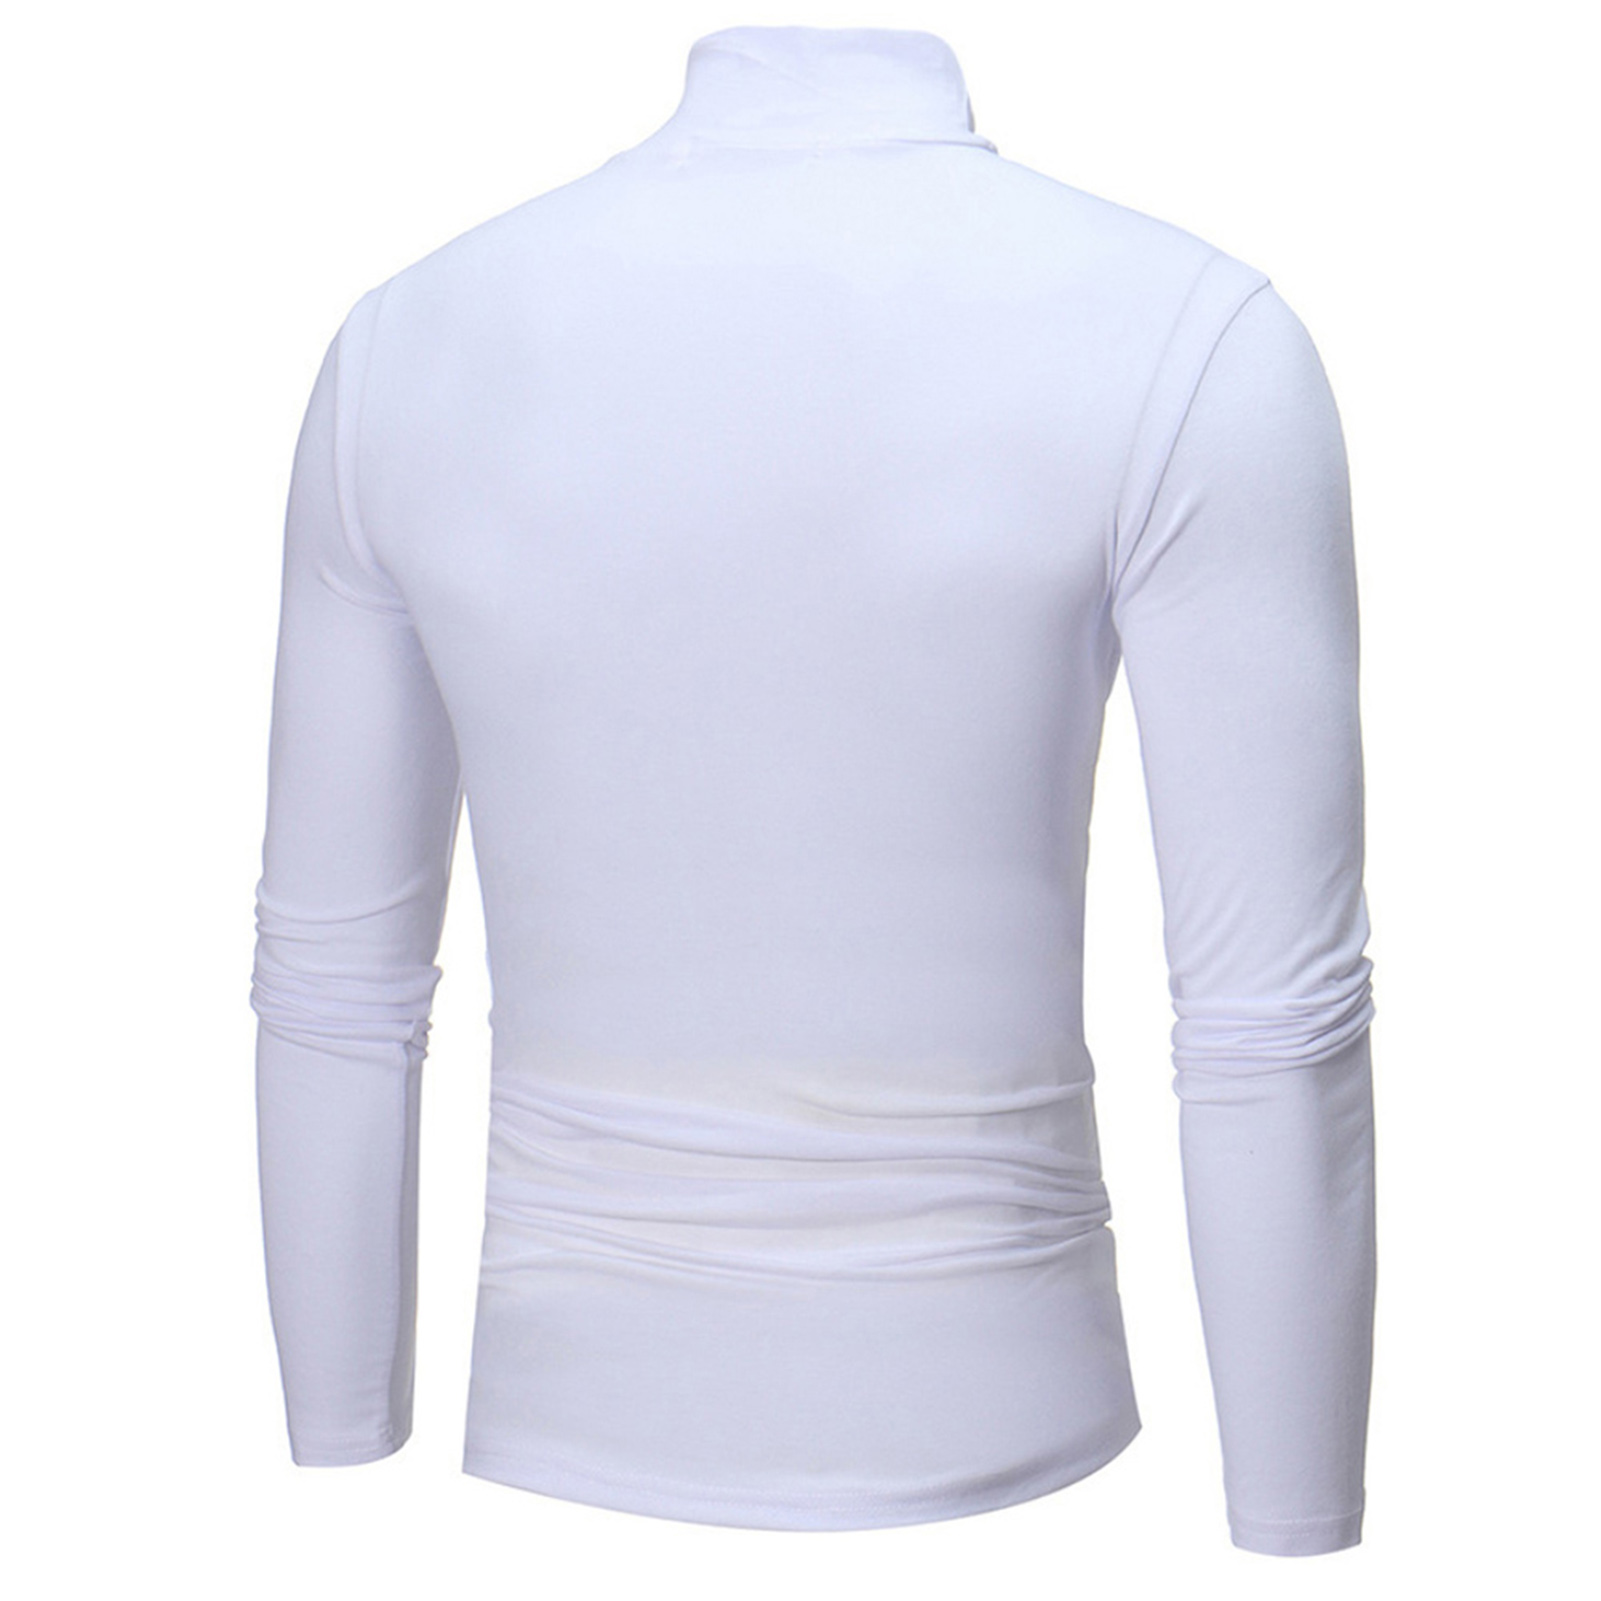 jangslng T-shirt Solid Color Long Sleeve Cotton Men Turtleneck Slim ...